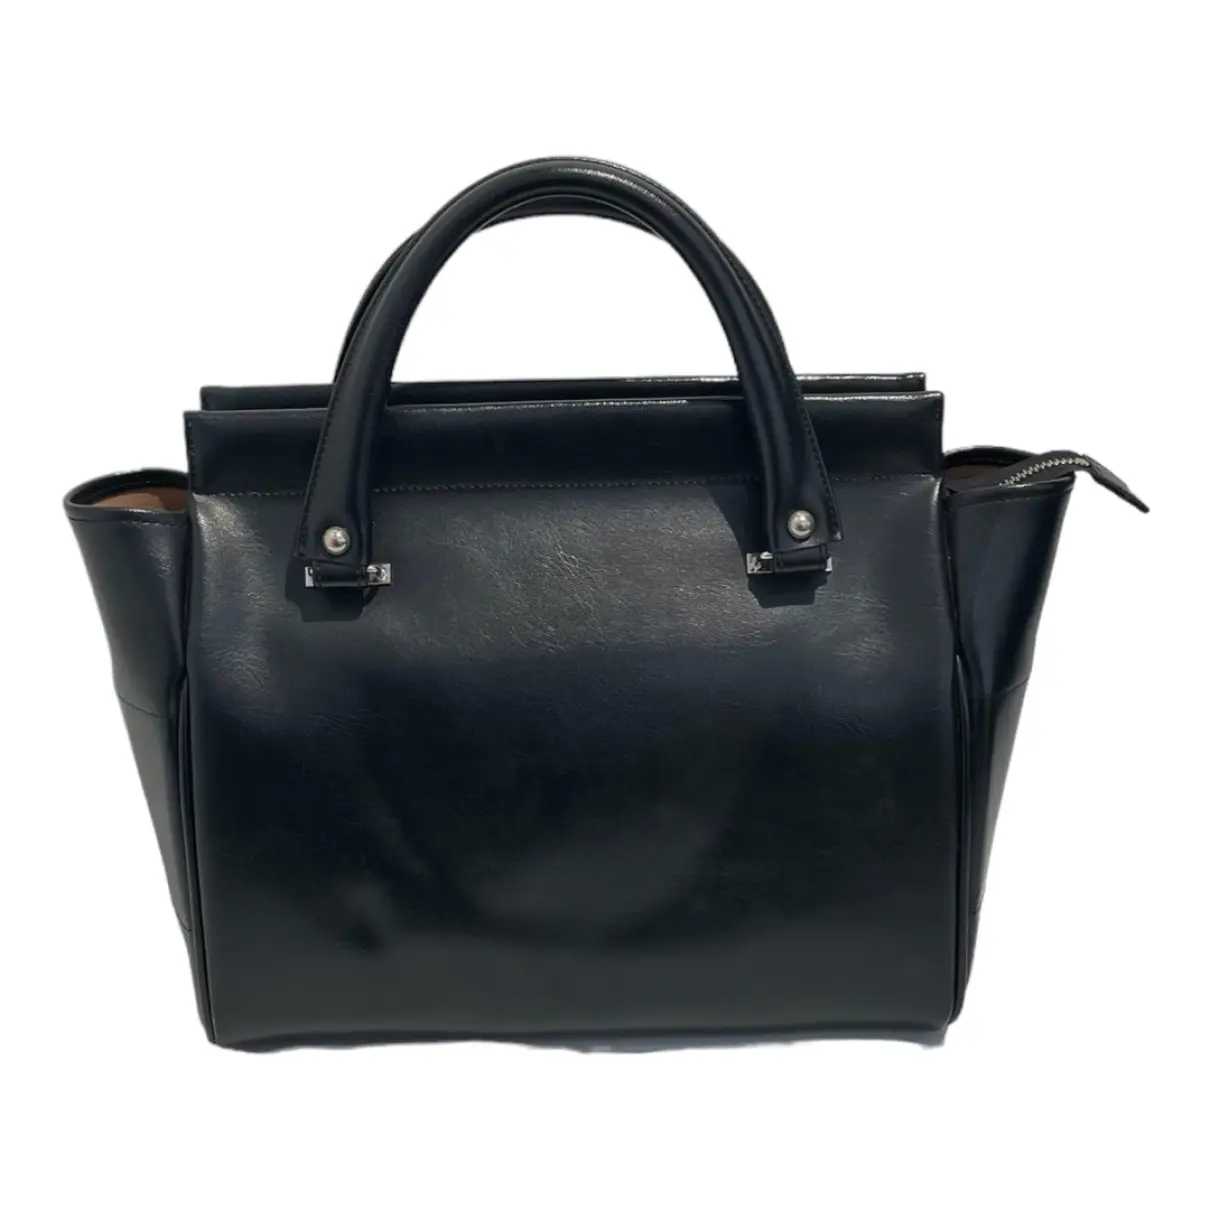 Buy Comme Des Garcons Leather handbag online